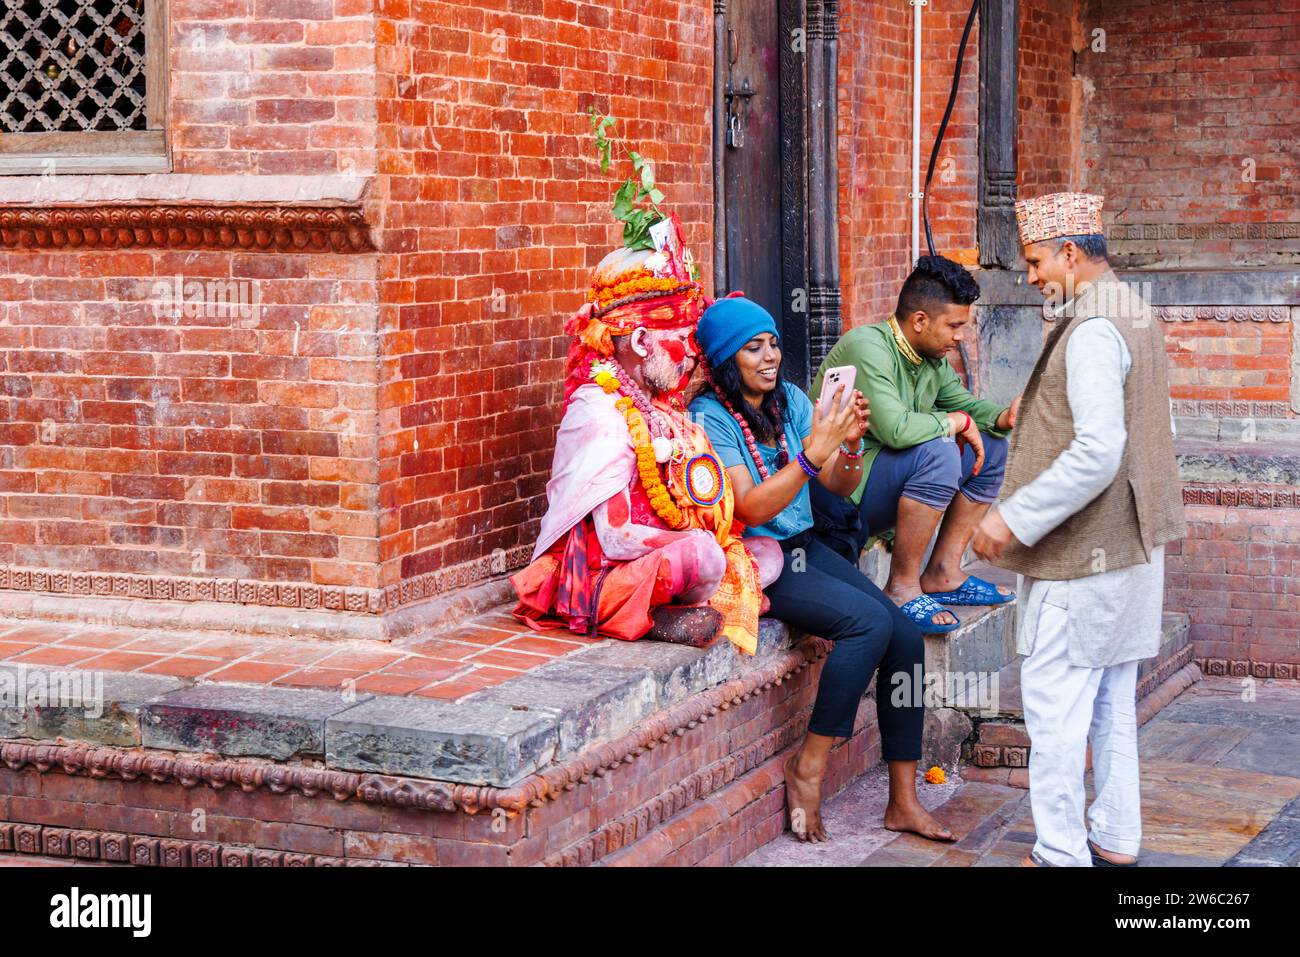 Ein Tourist macht ein Selfie mit einem lokalen Sadhu in Pashupatinath, einem UNESCO-Weltkulturerbe in Kathmandu, der Hauptstadt Nepals Stockfoto